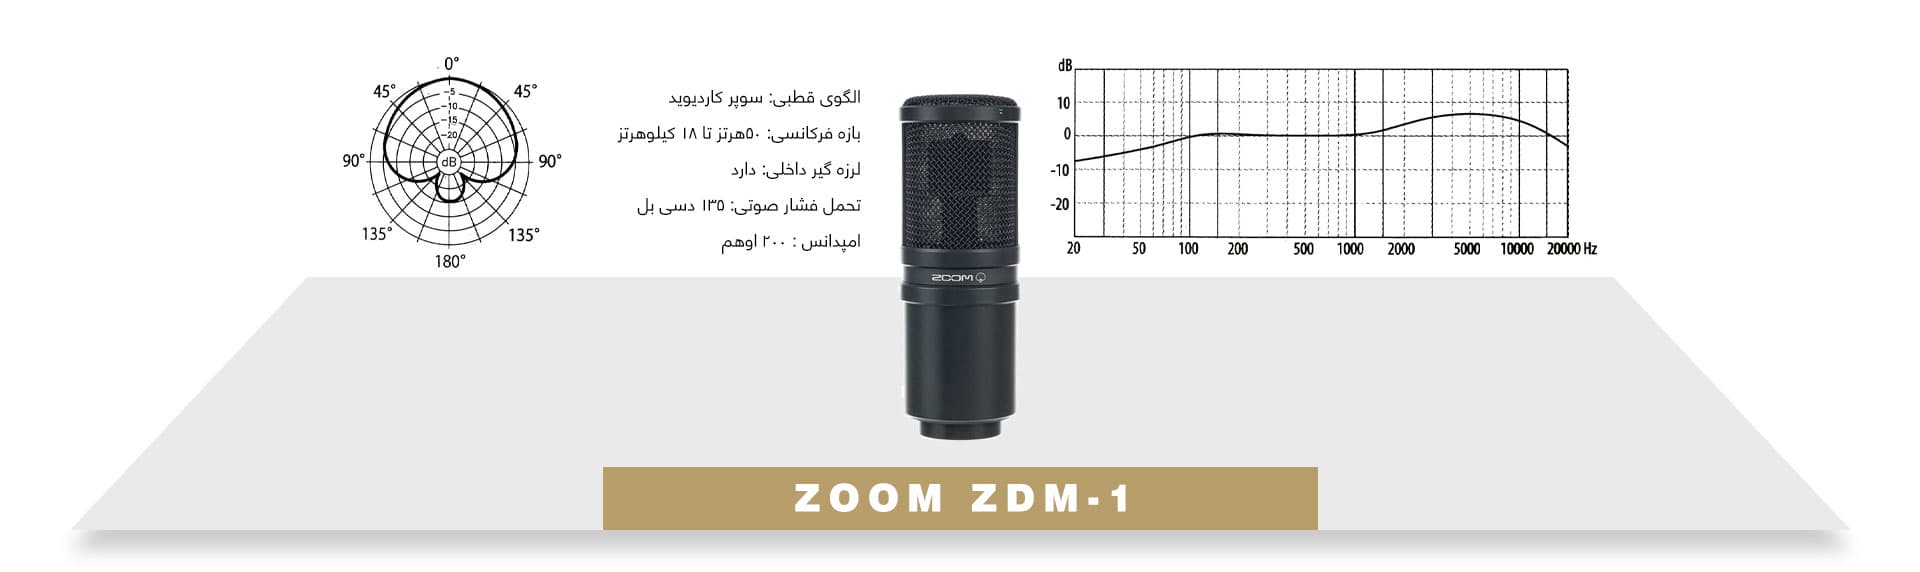 میکروفون داینامیک پادکست برادکست Zoom ZDM-1